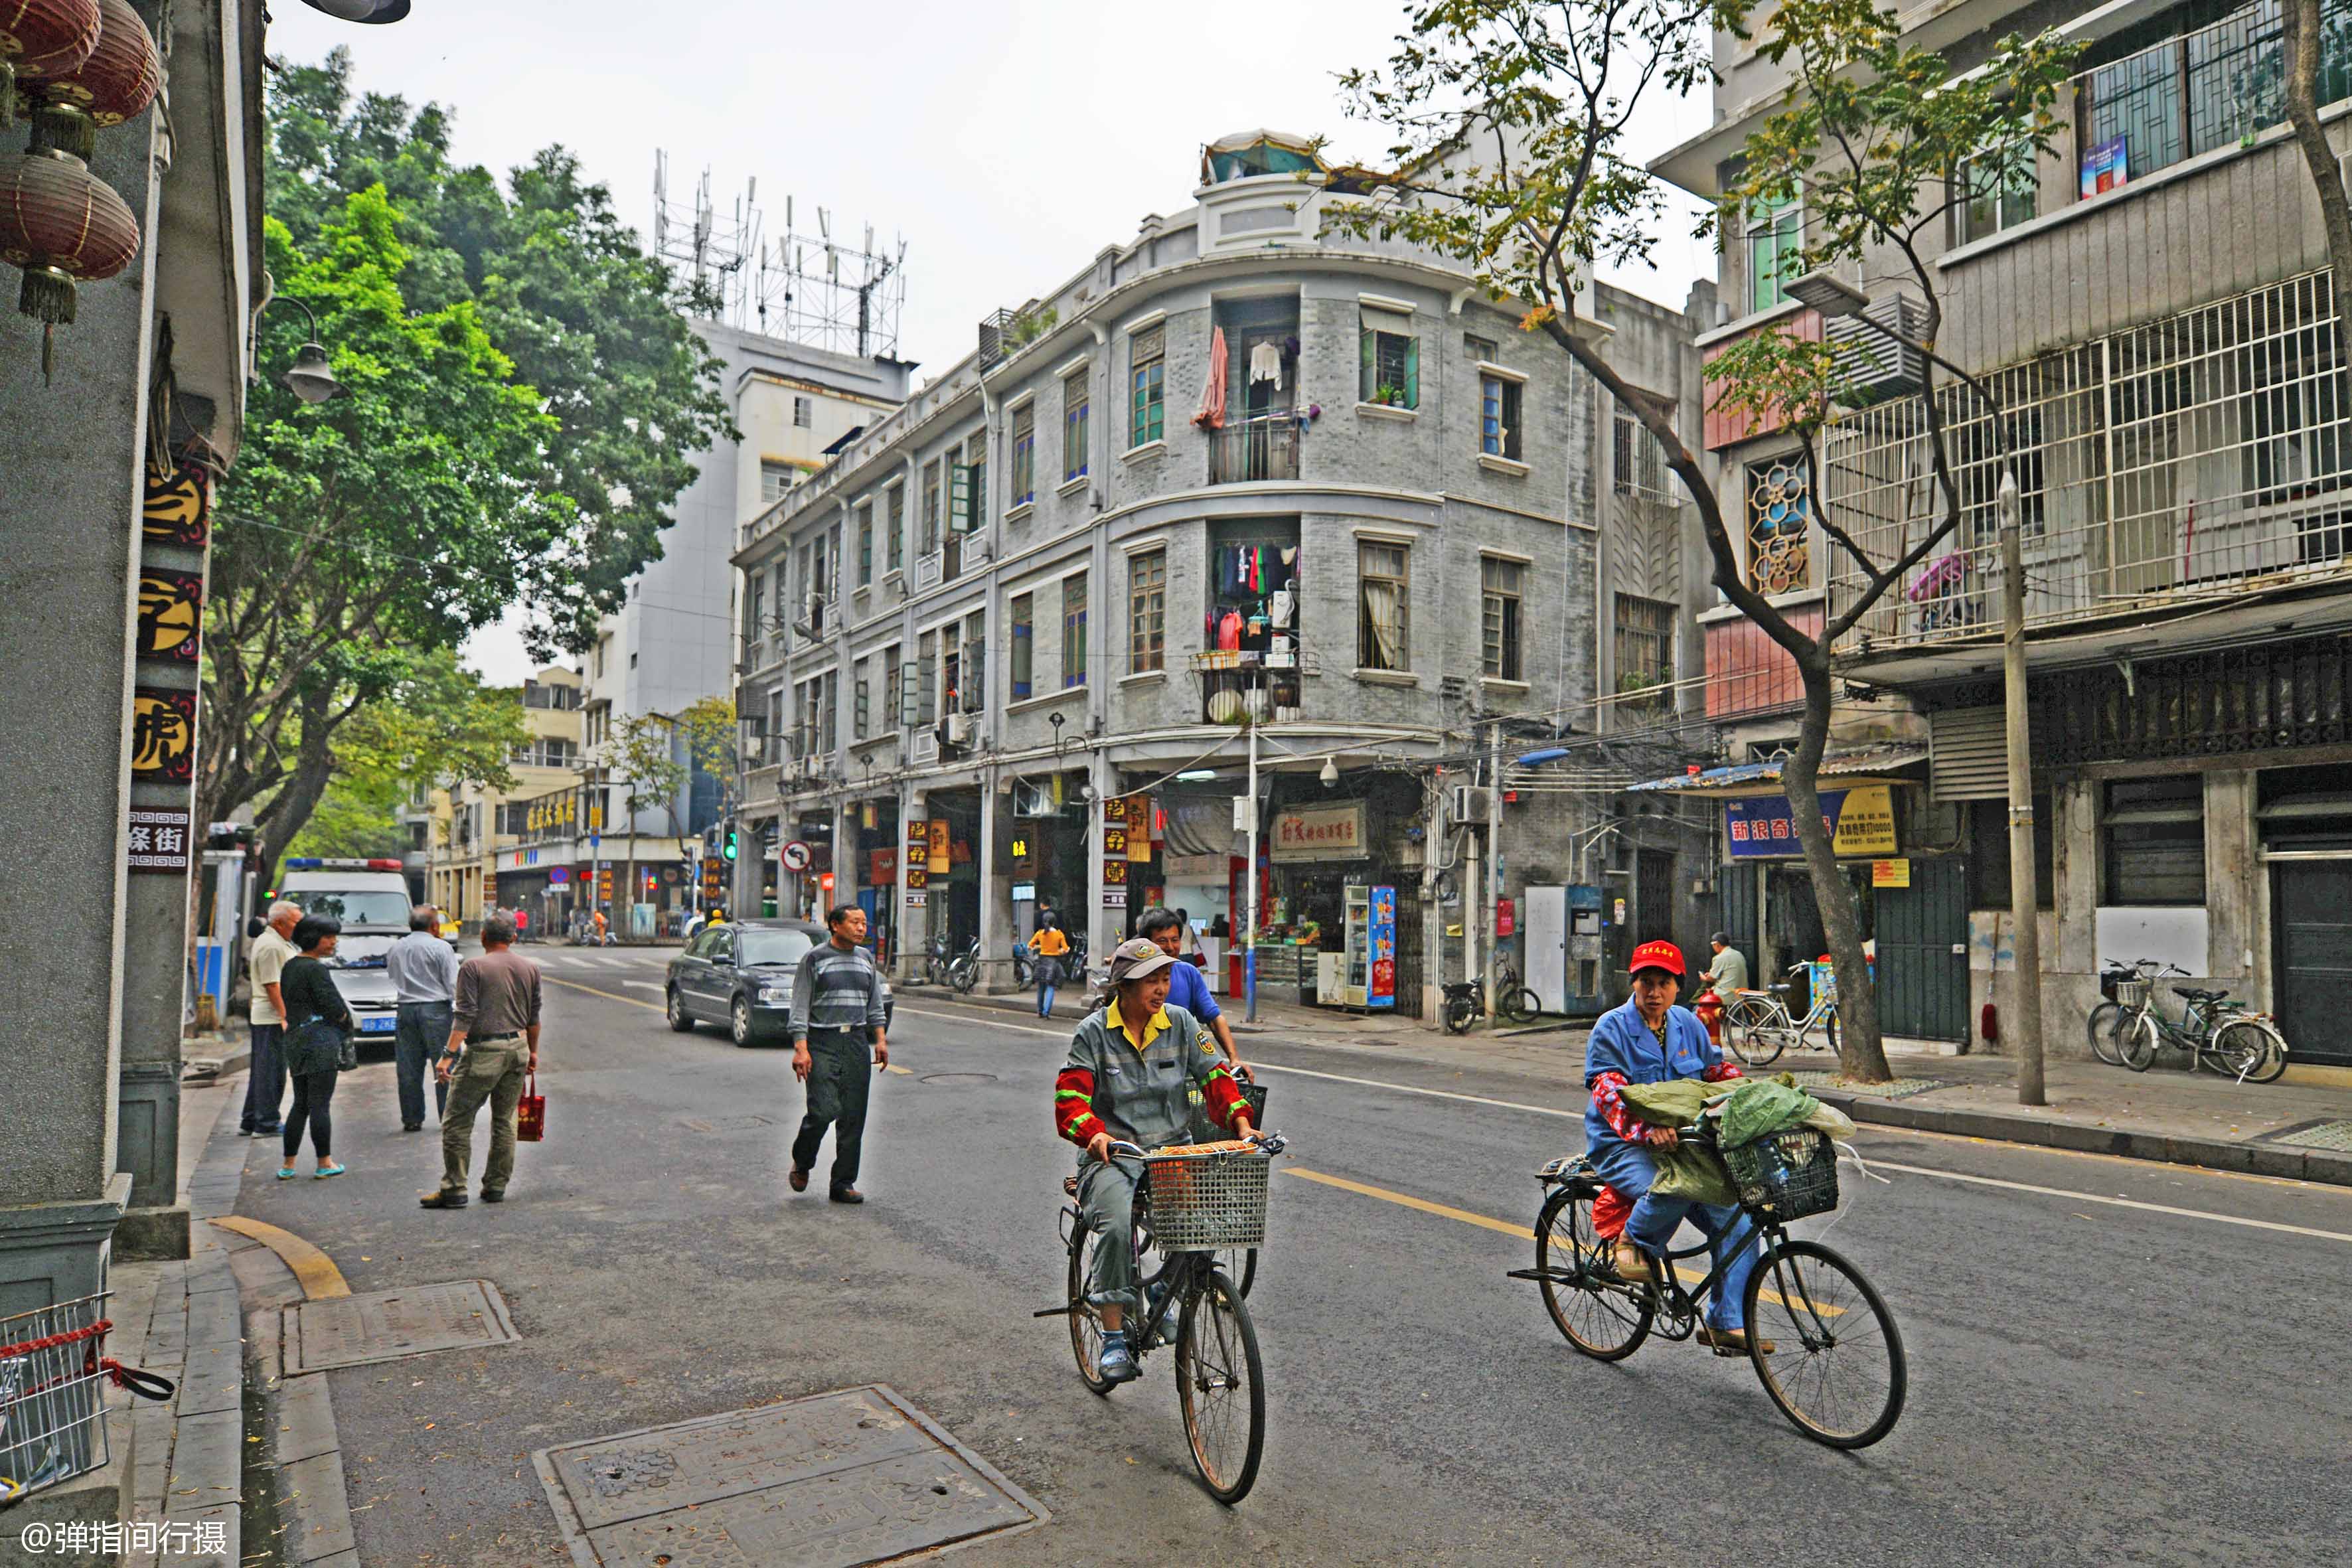 位于广州荔湾区中心地带的恩宁路,是人们常说的"广州最美老街",过去